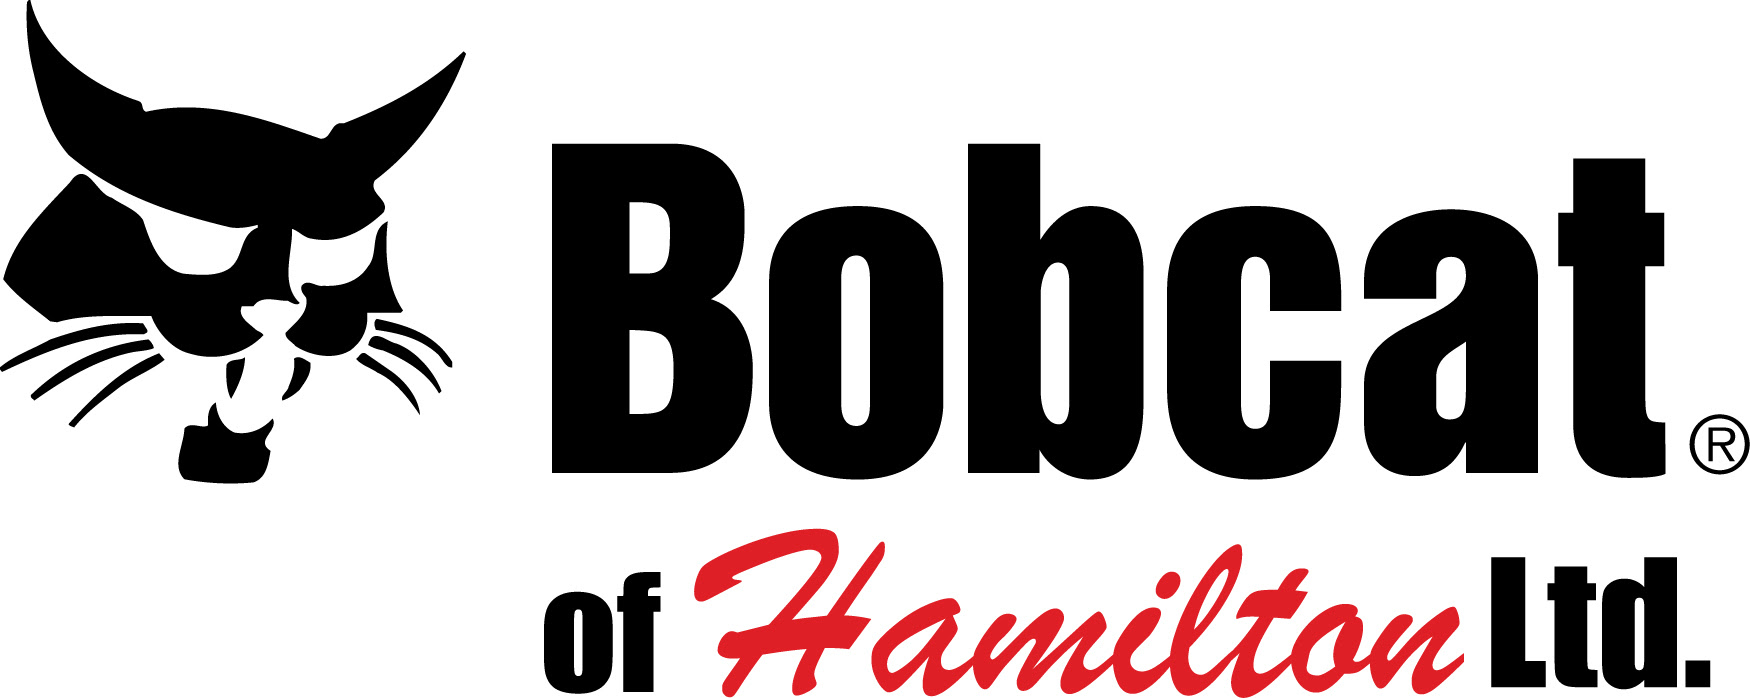 Bobcat of Hamilton